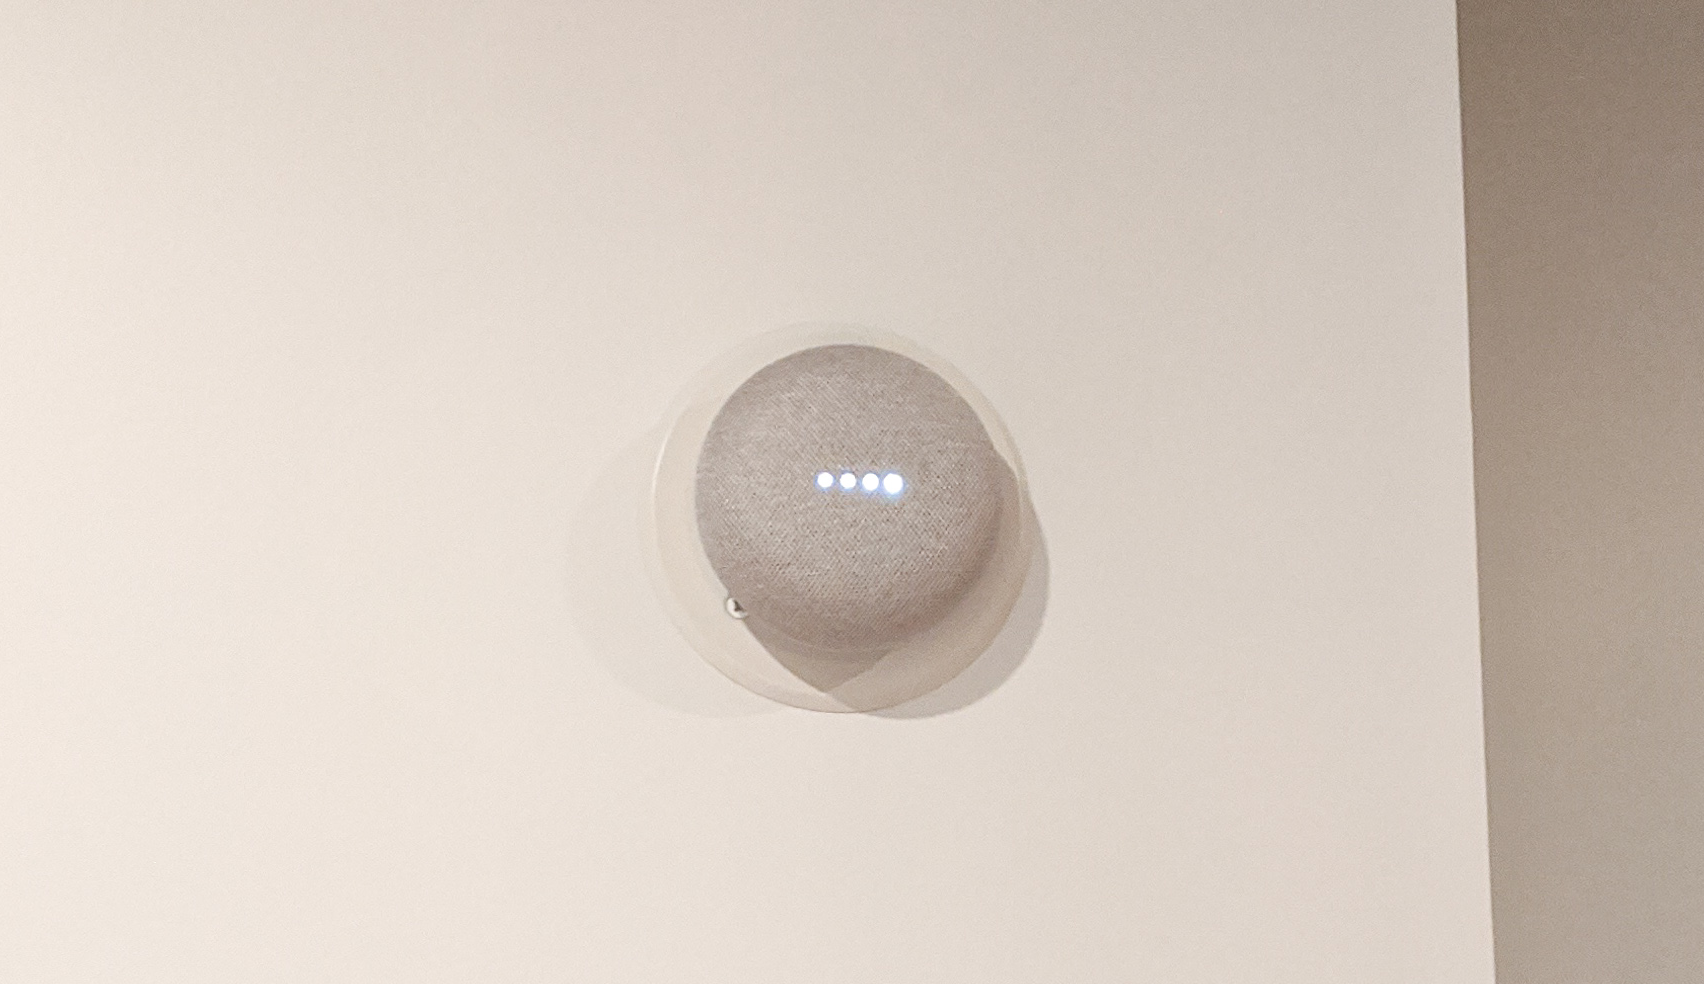 Google Home Mini Doorbell